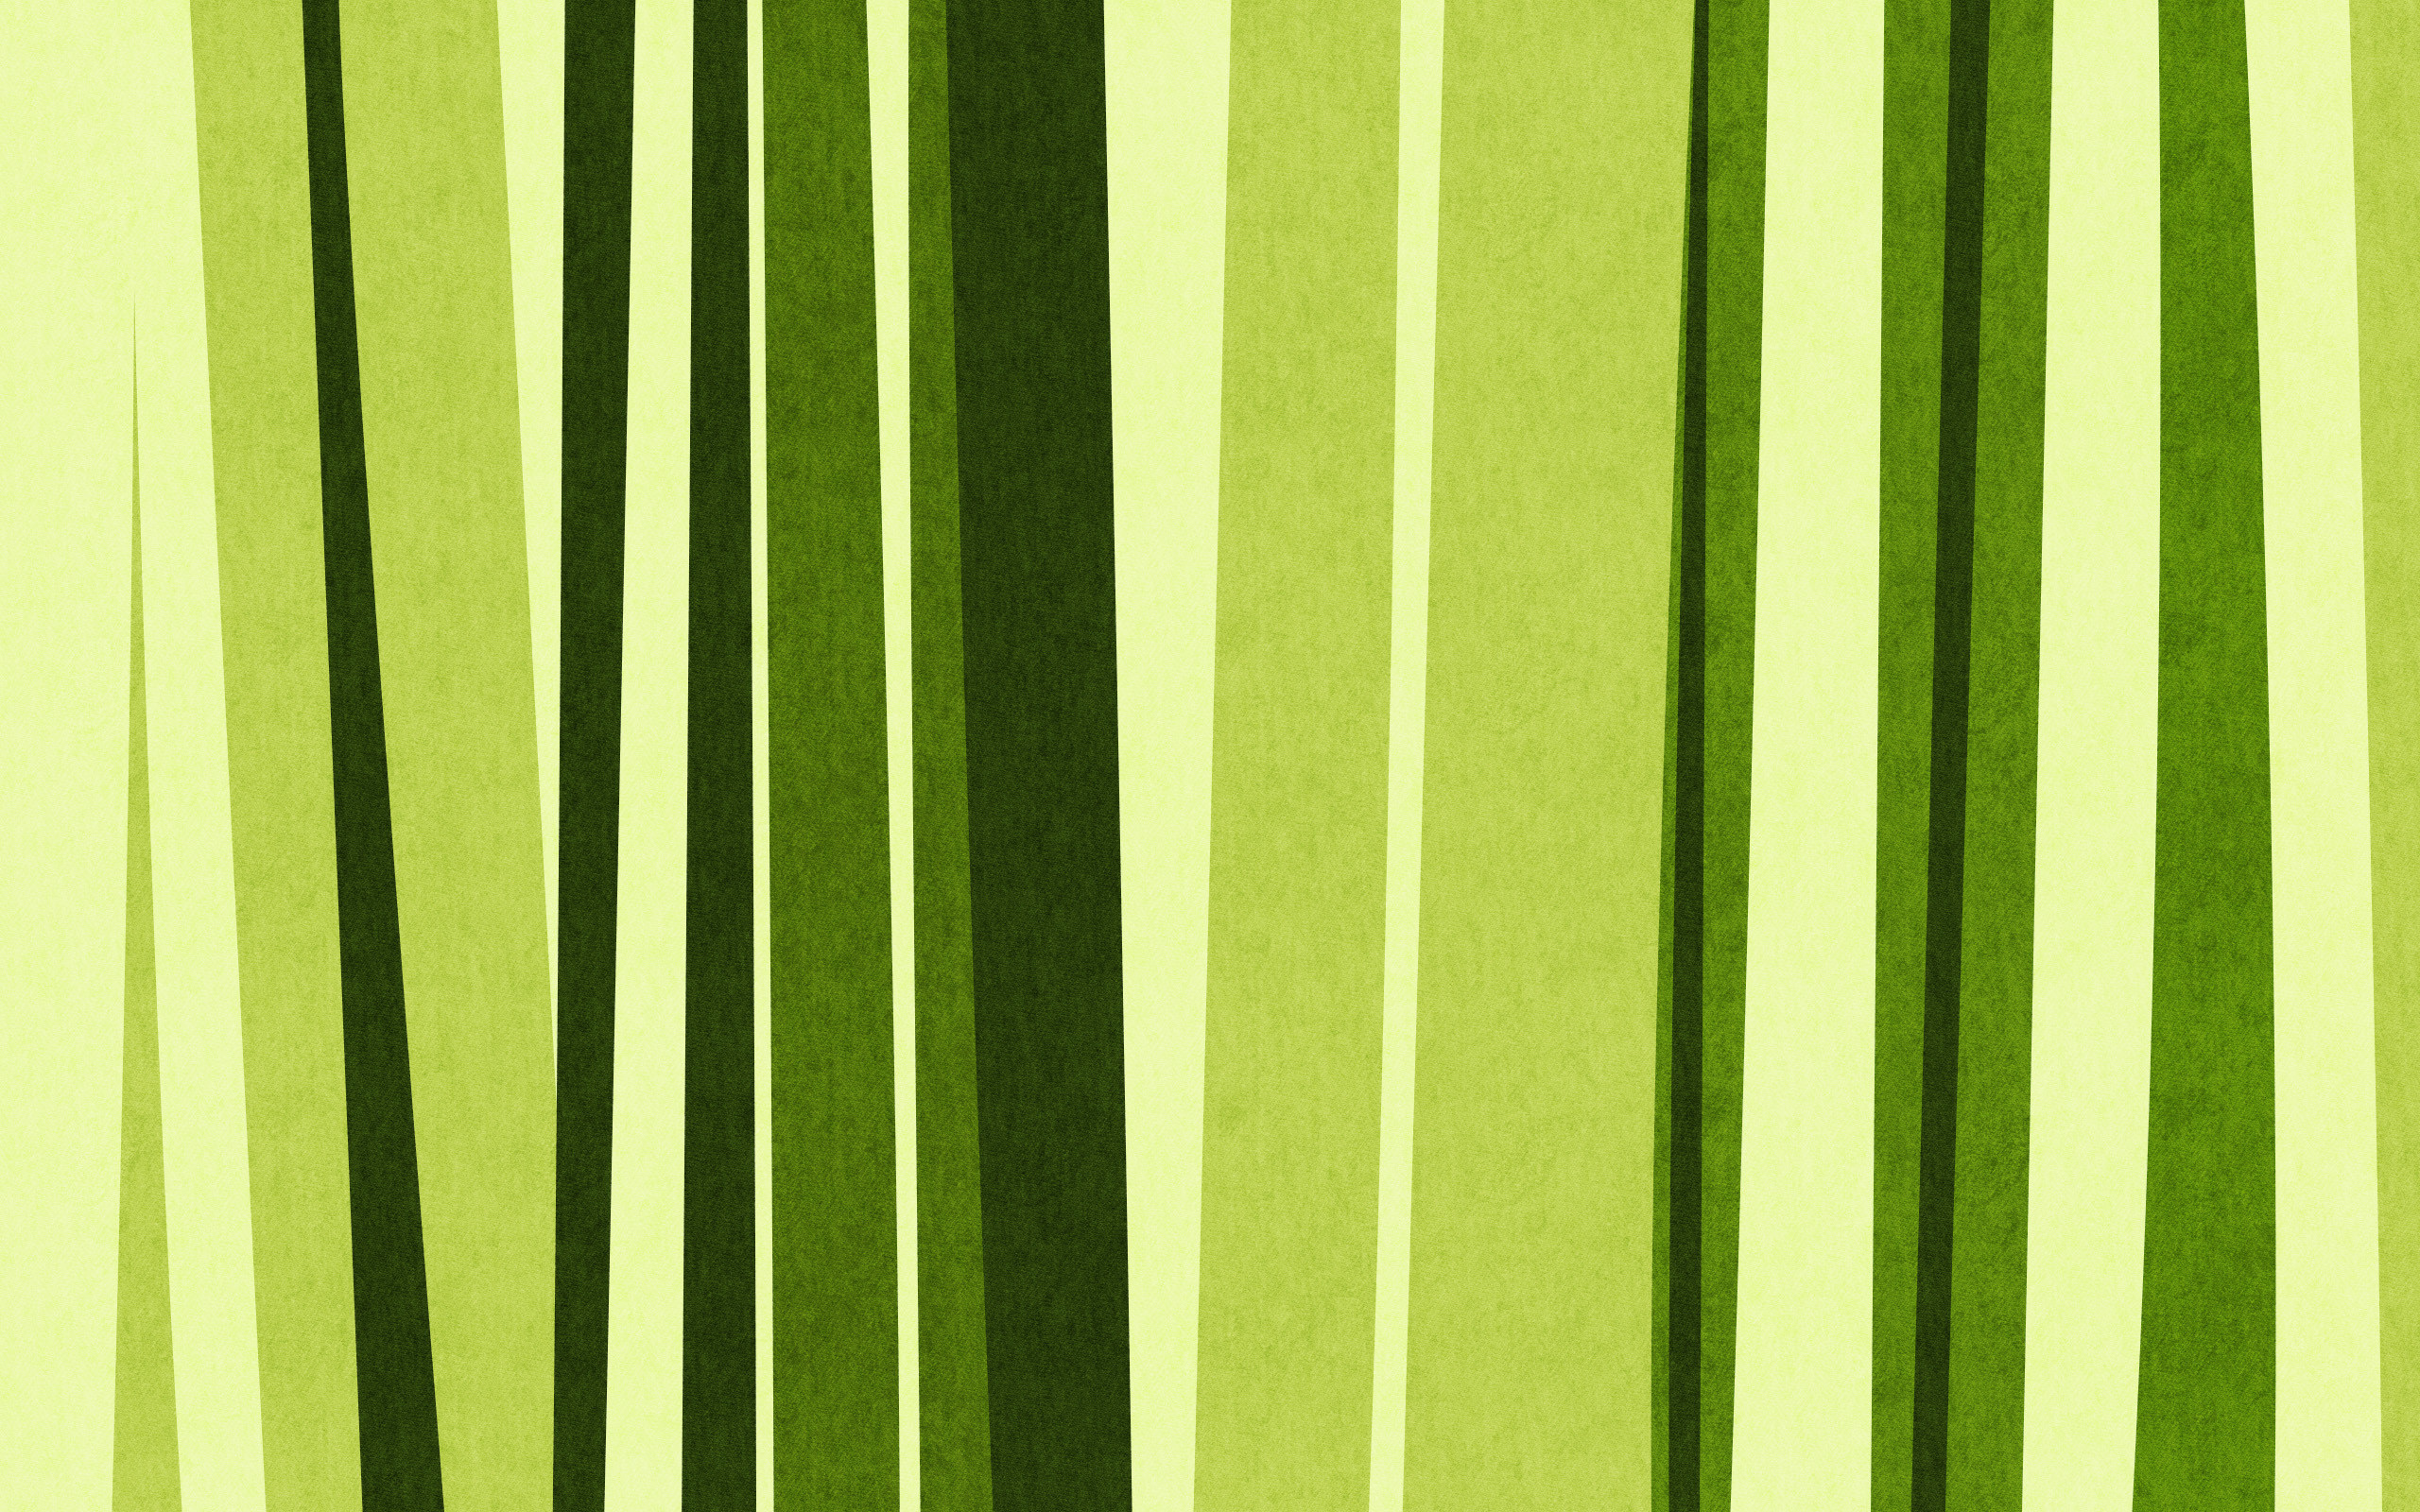 2560x1600 green bamboo, texture bamboo , green bamboo texture, photo, background